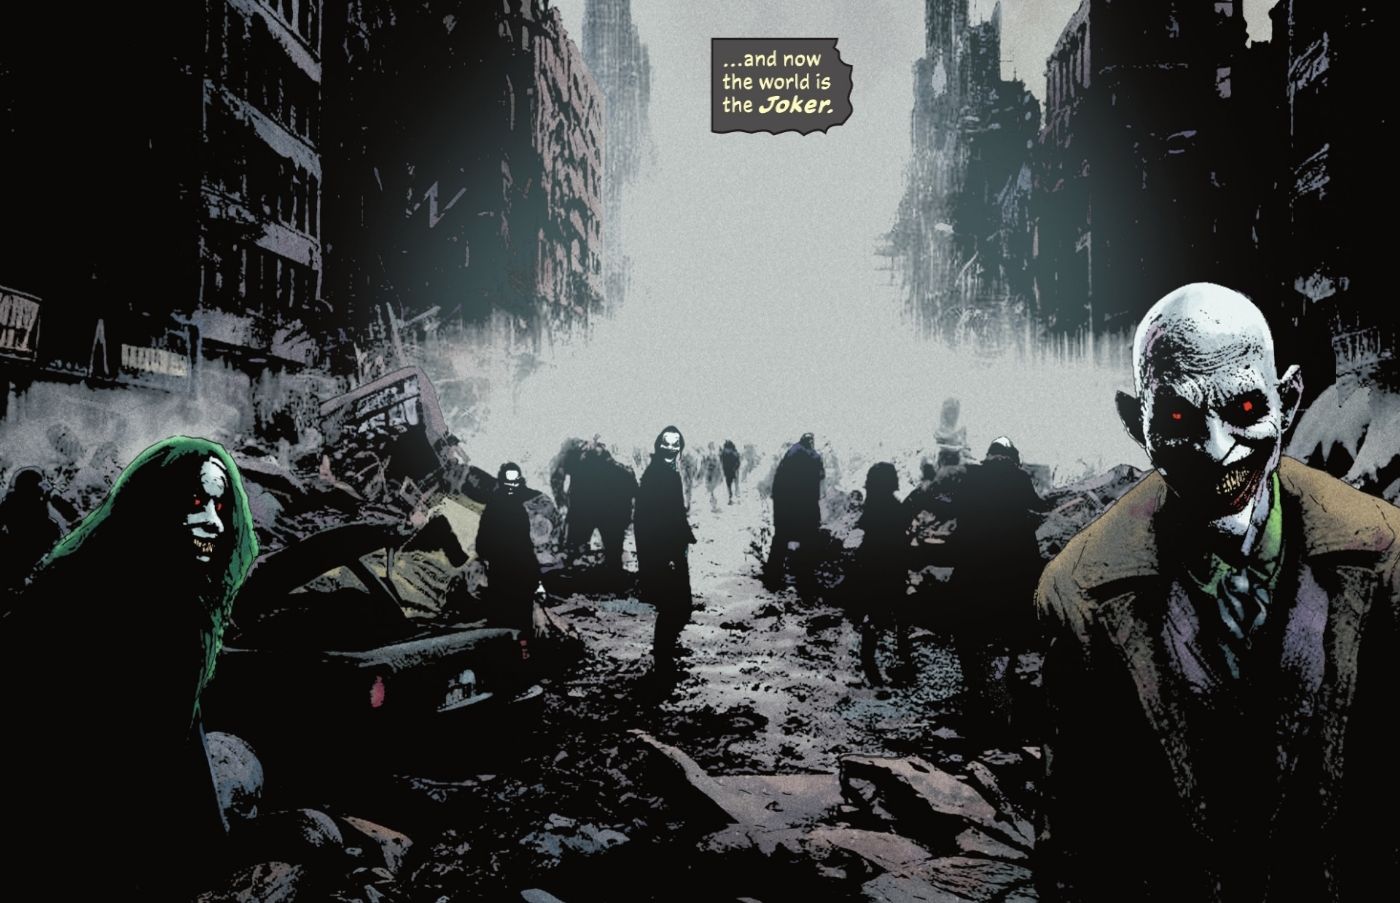 Batman #142, future timeline, Gotham lies in ruins with Jokerfied civilians all around